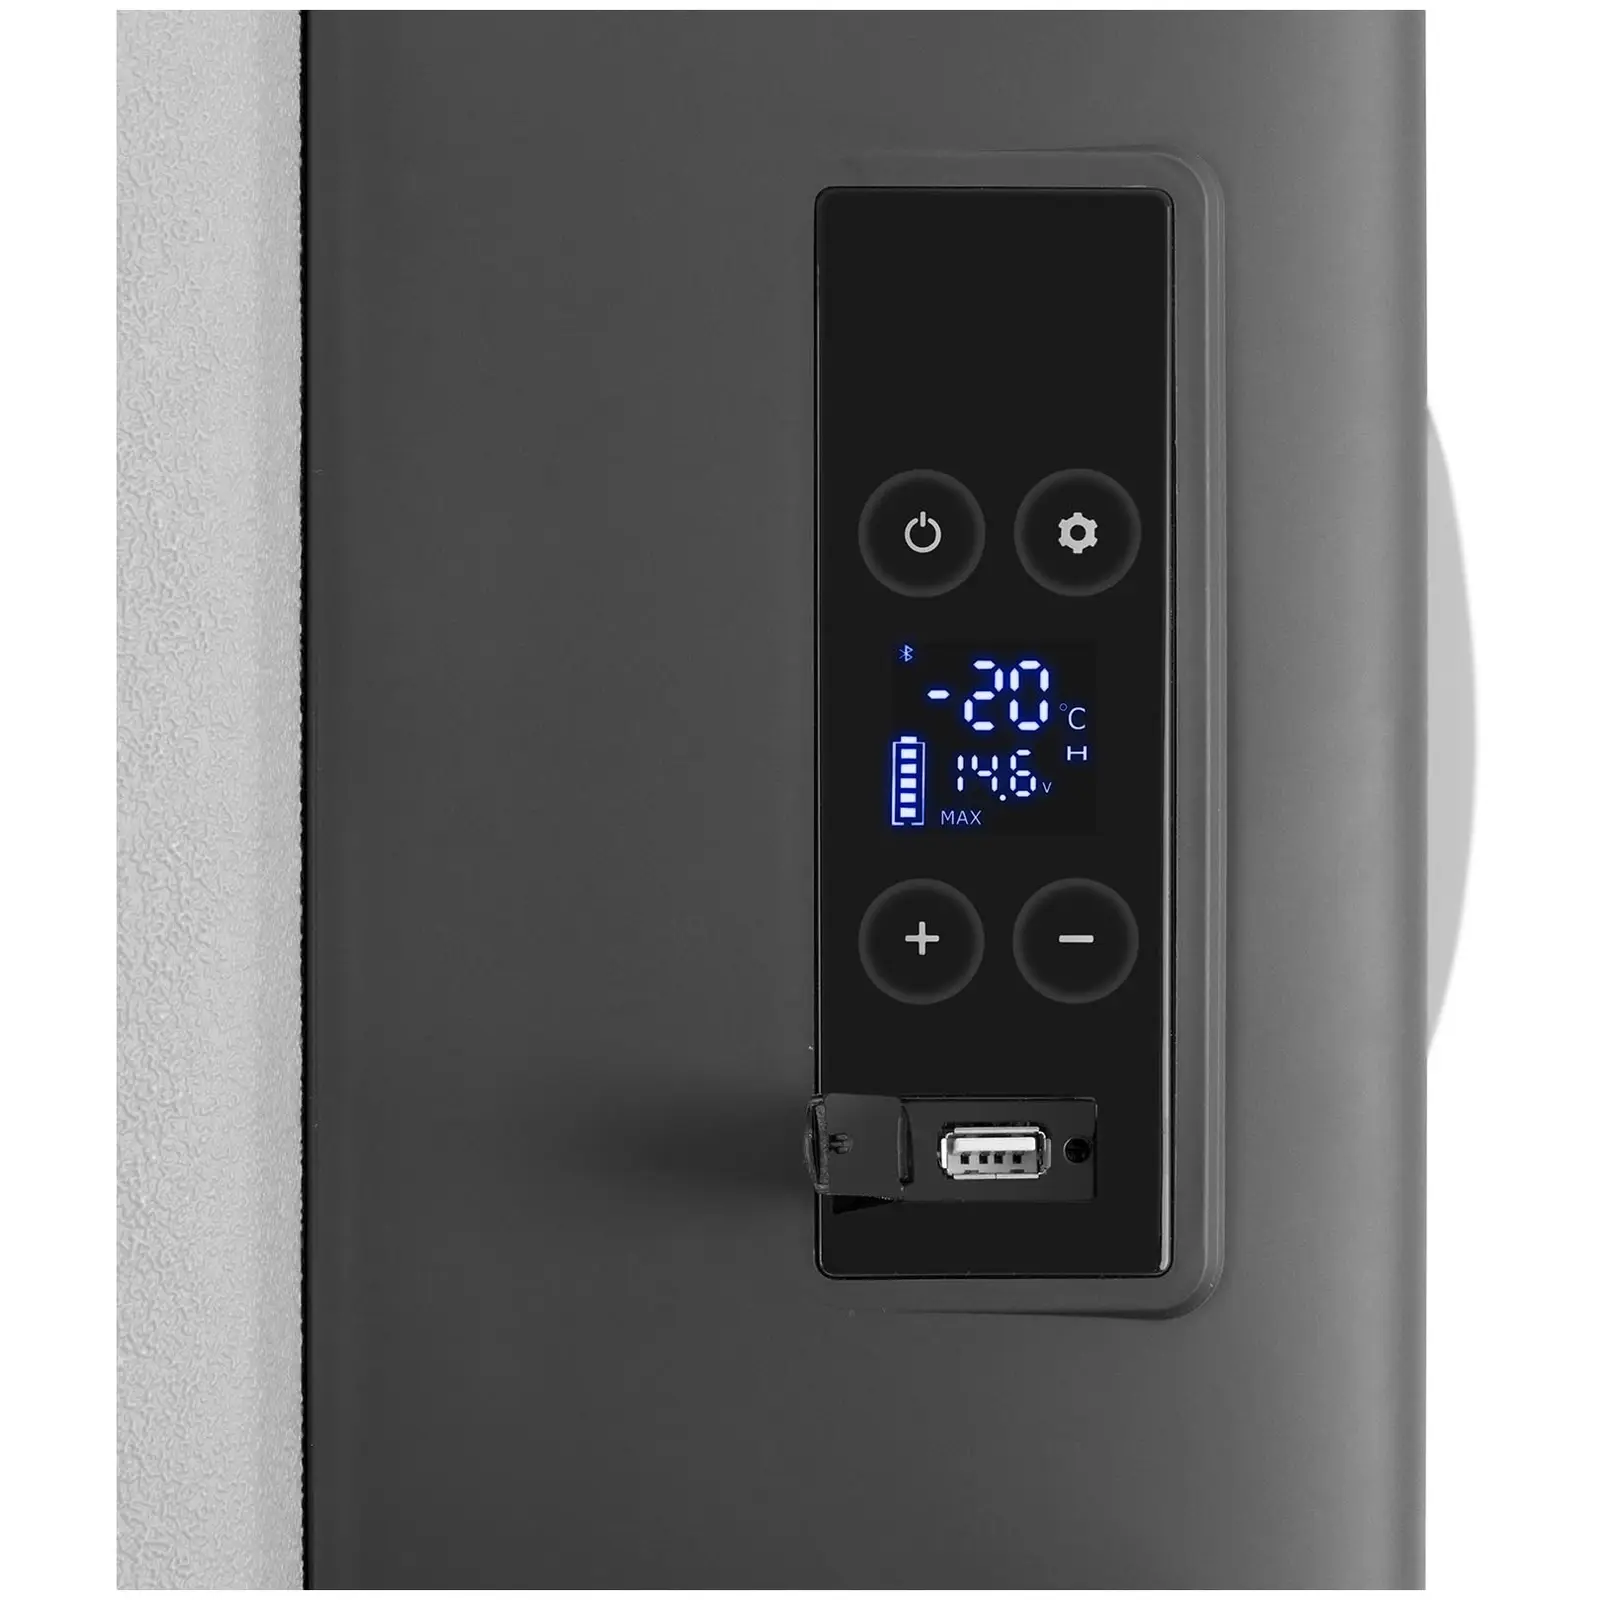 Køleskab til bil - fryseevne - 12/24 V (DC) /100 - 240 V (AC) - 20 l